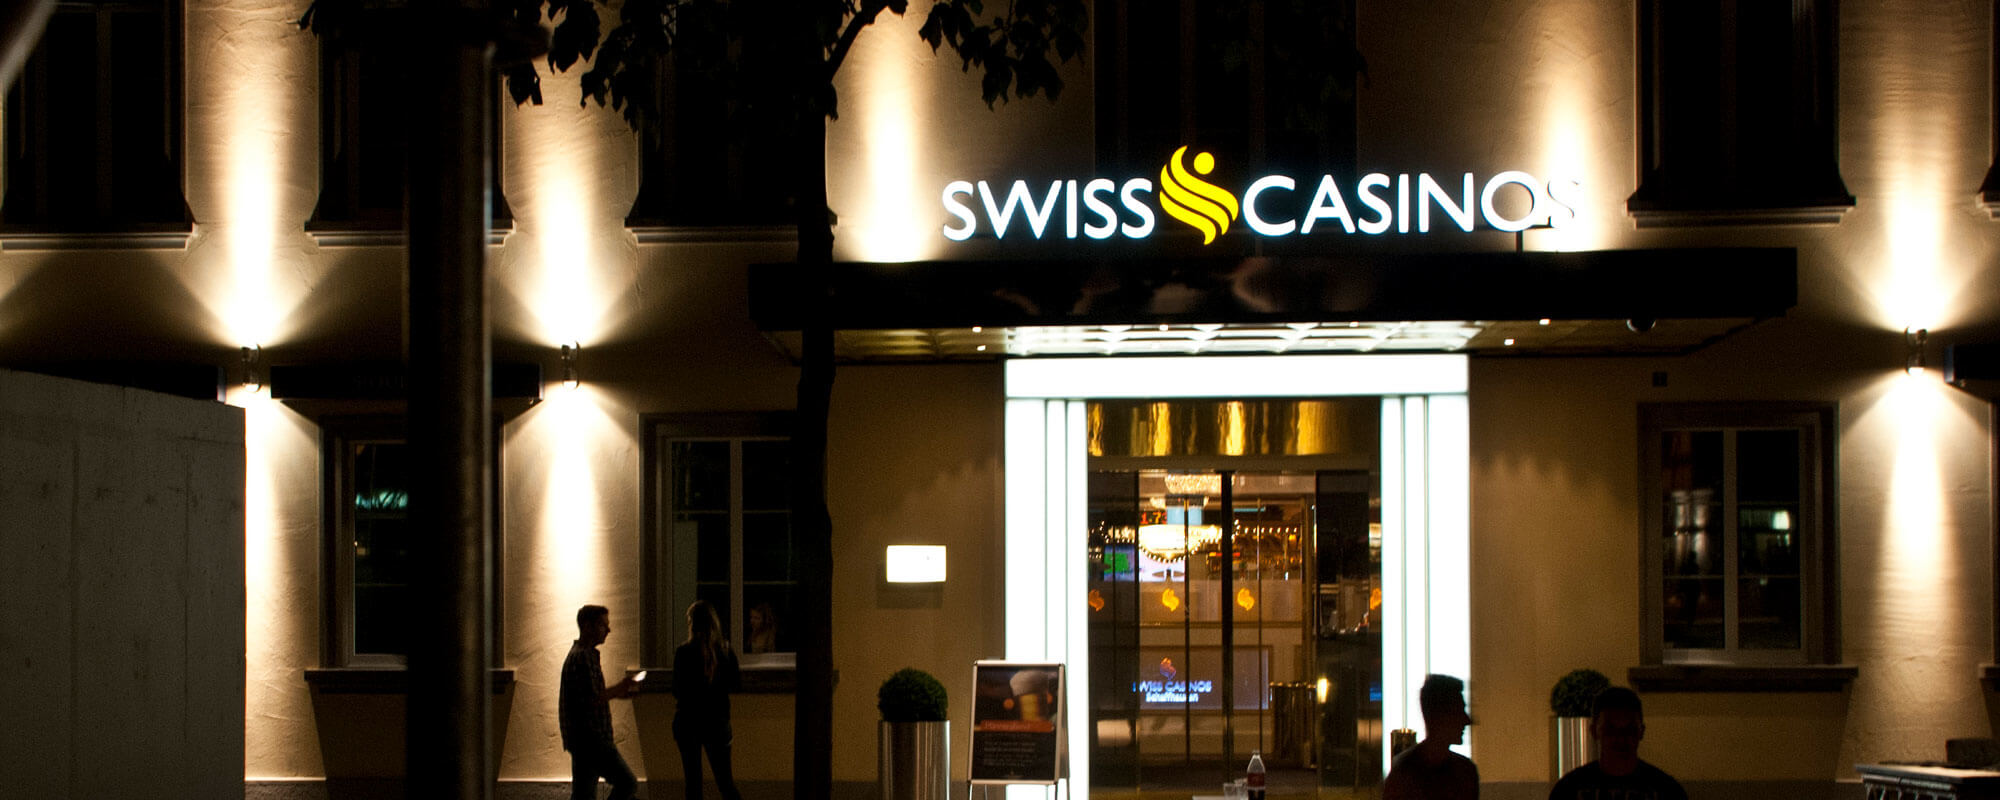 Swiss Casino in Zurich